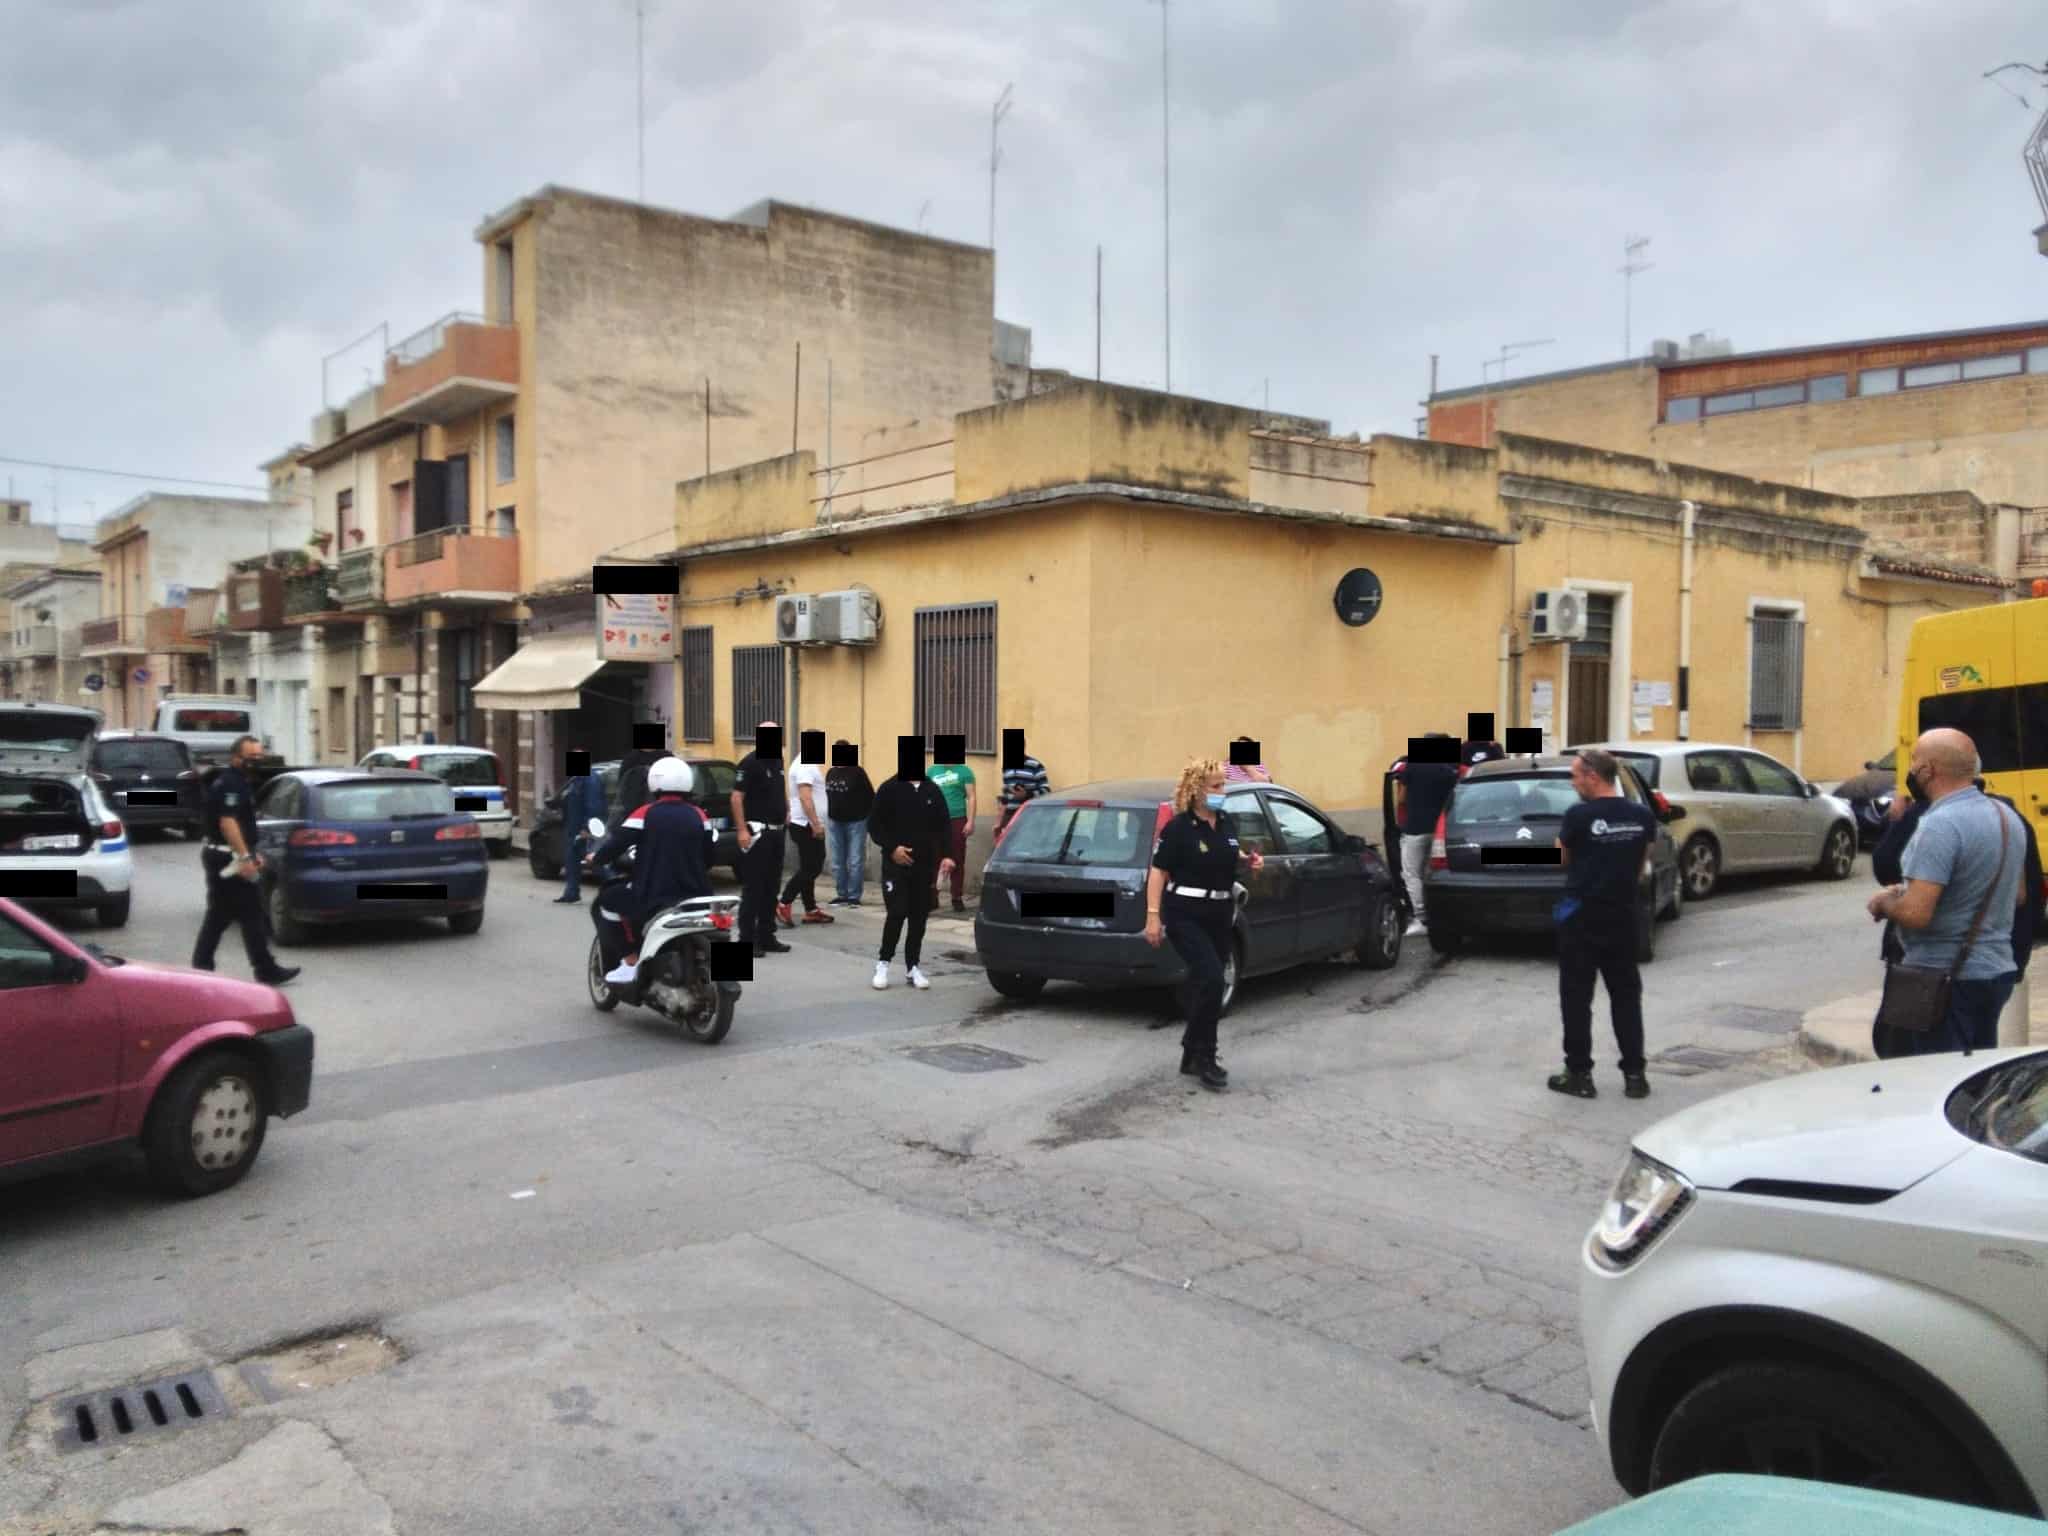 Doppio incidente in via Plebiscito e via Giacomo Leopardi: rilievi in corso, feriti in ospedale – FOTO